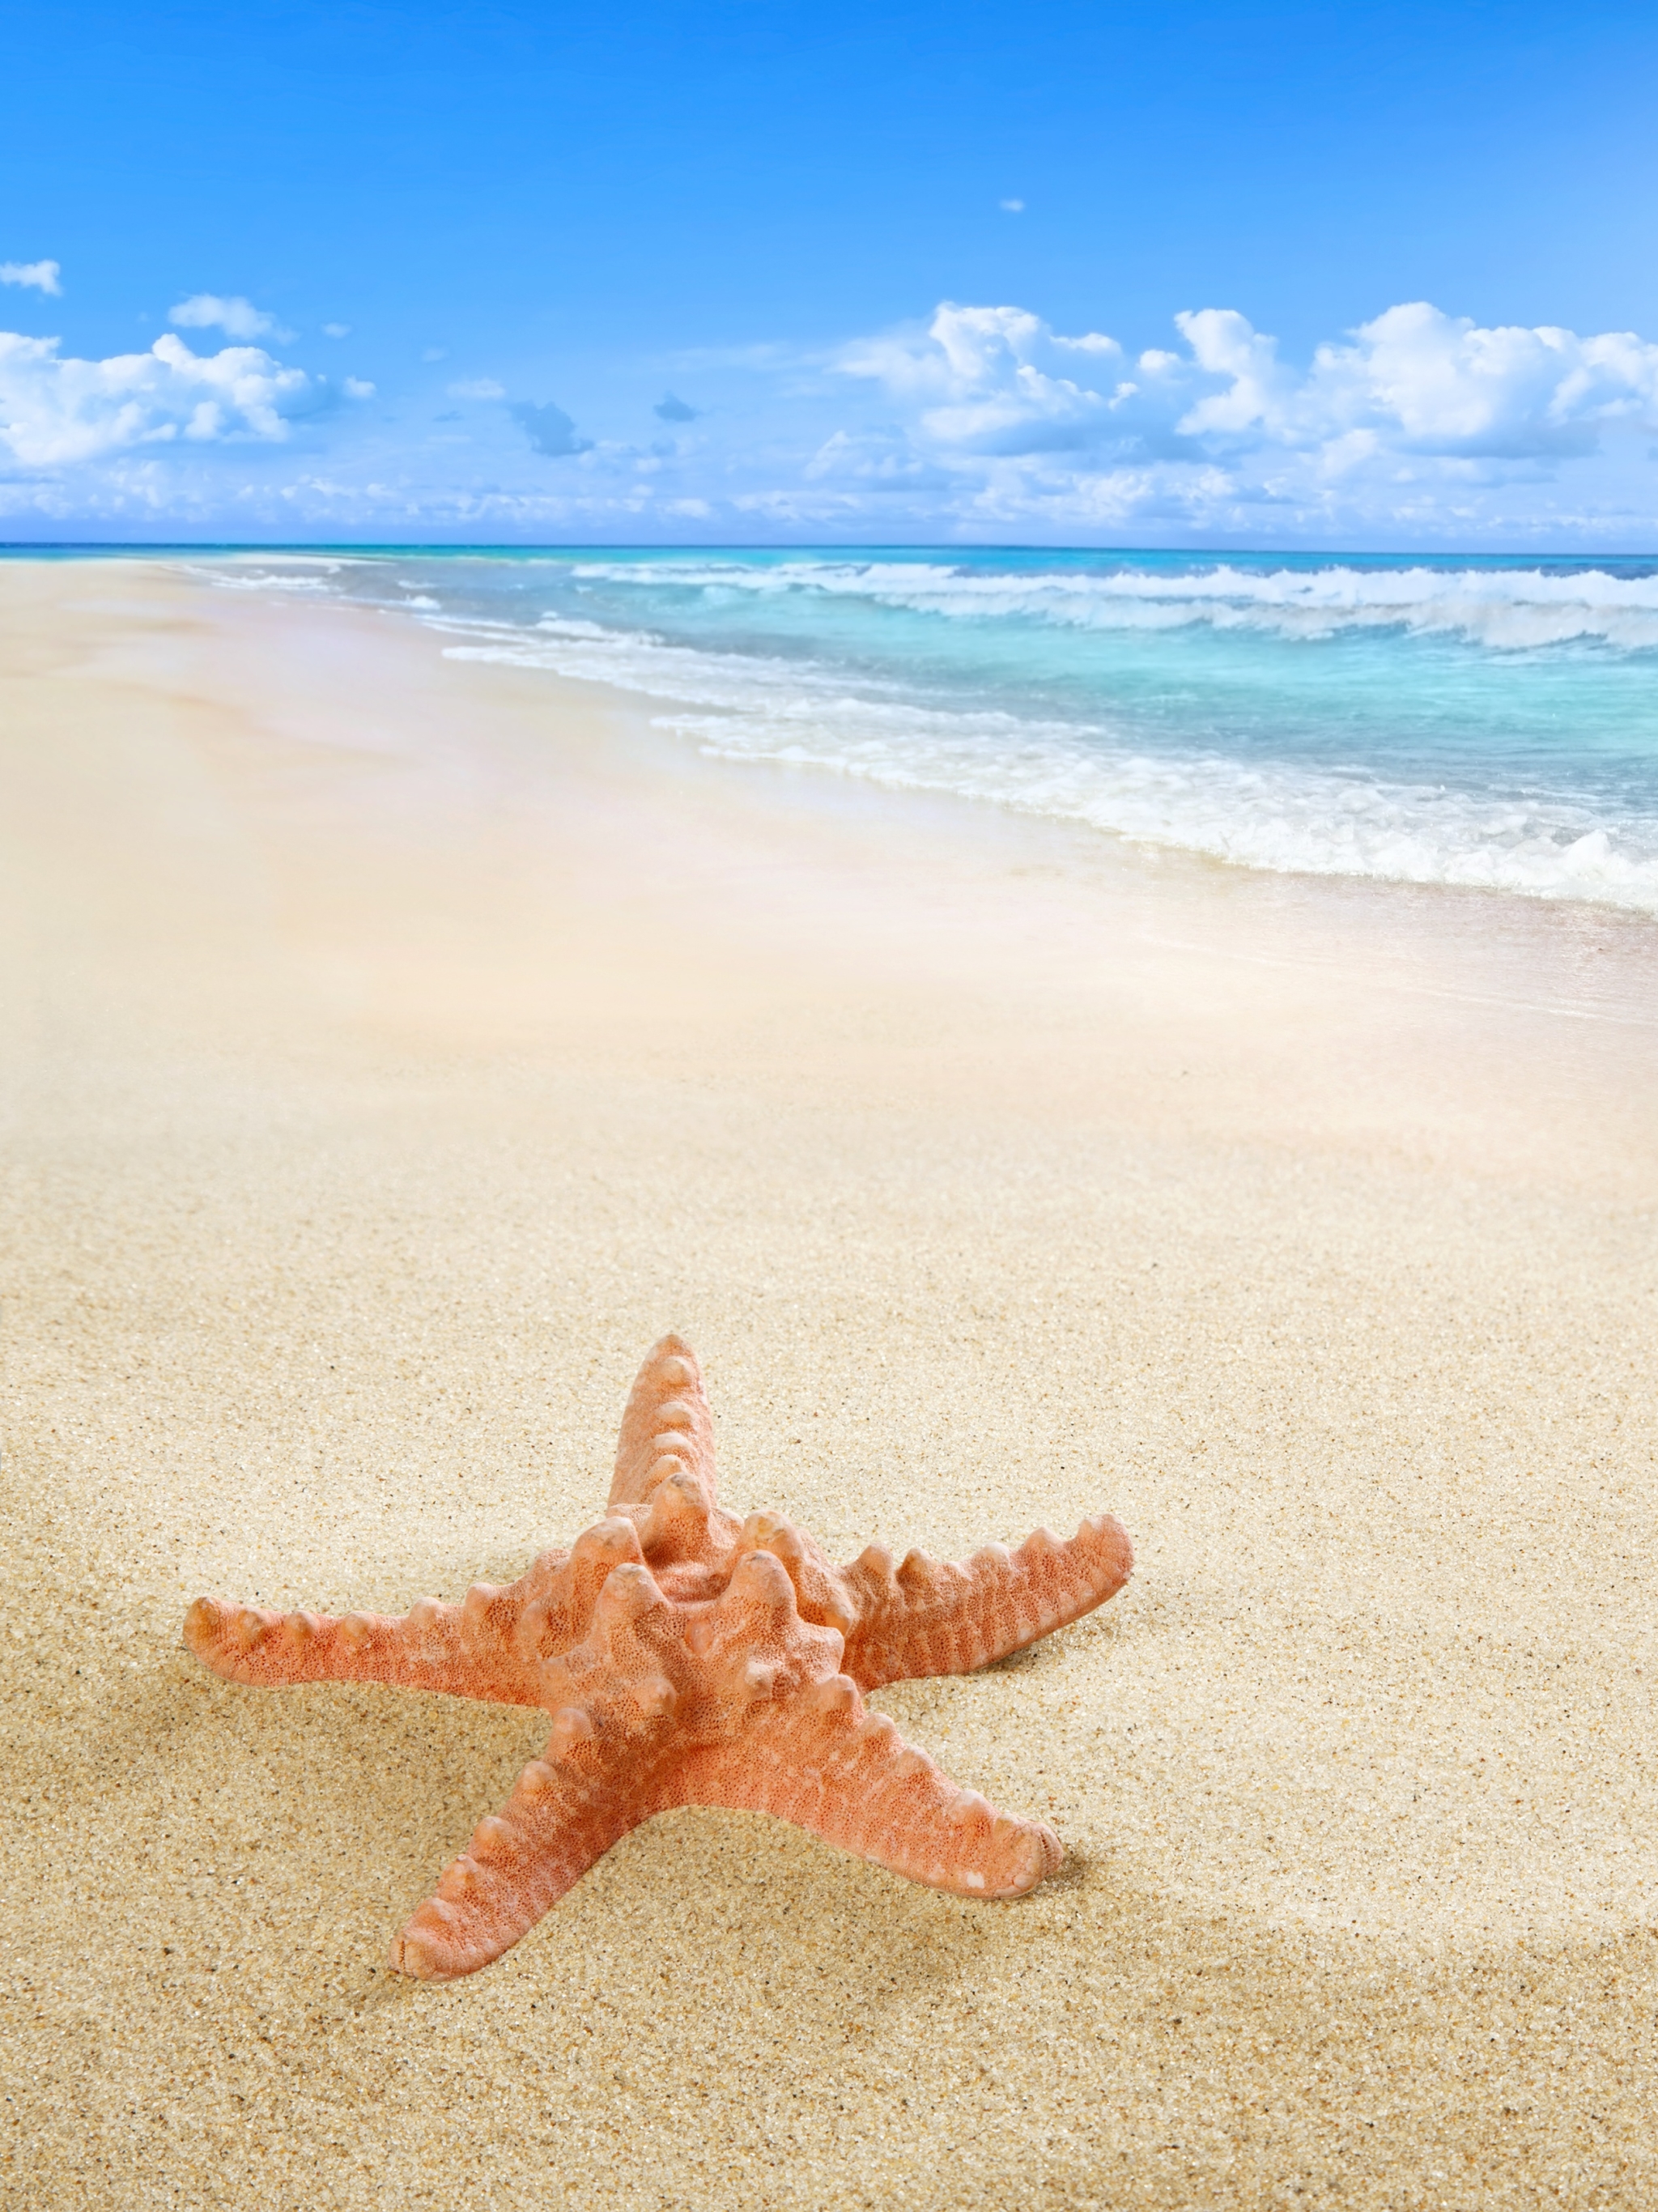 Скачать картинку Природа, Пляж, Песок, Горизонт, Морская Звезда, Земля/природа в телефон бесплатно.